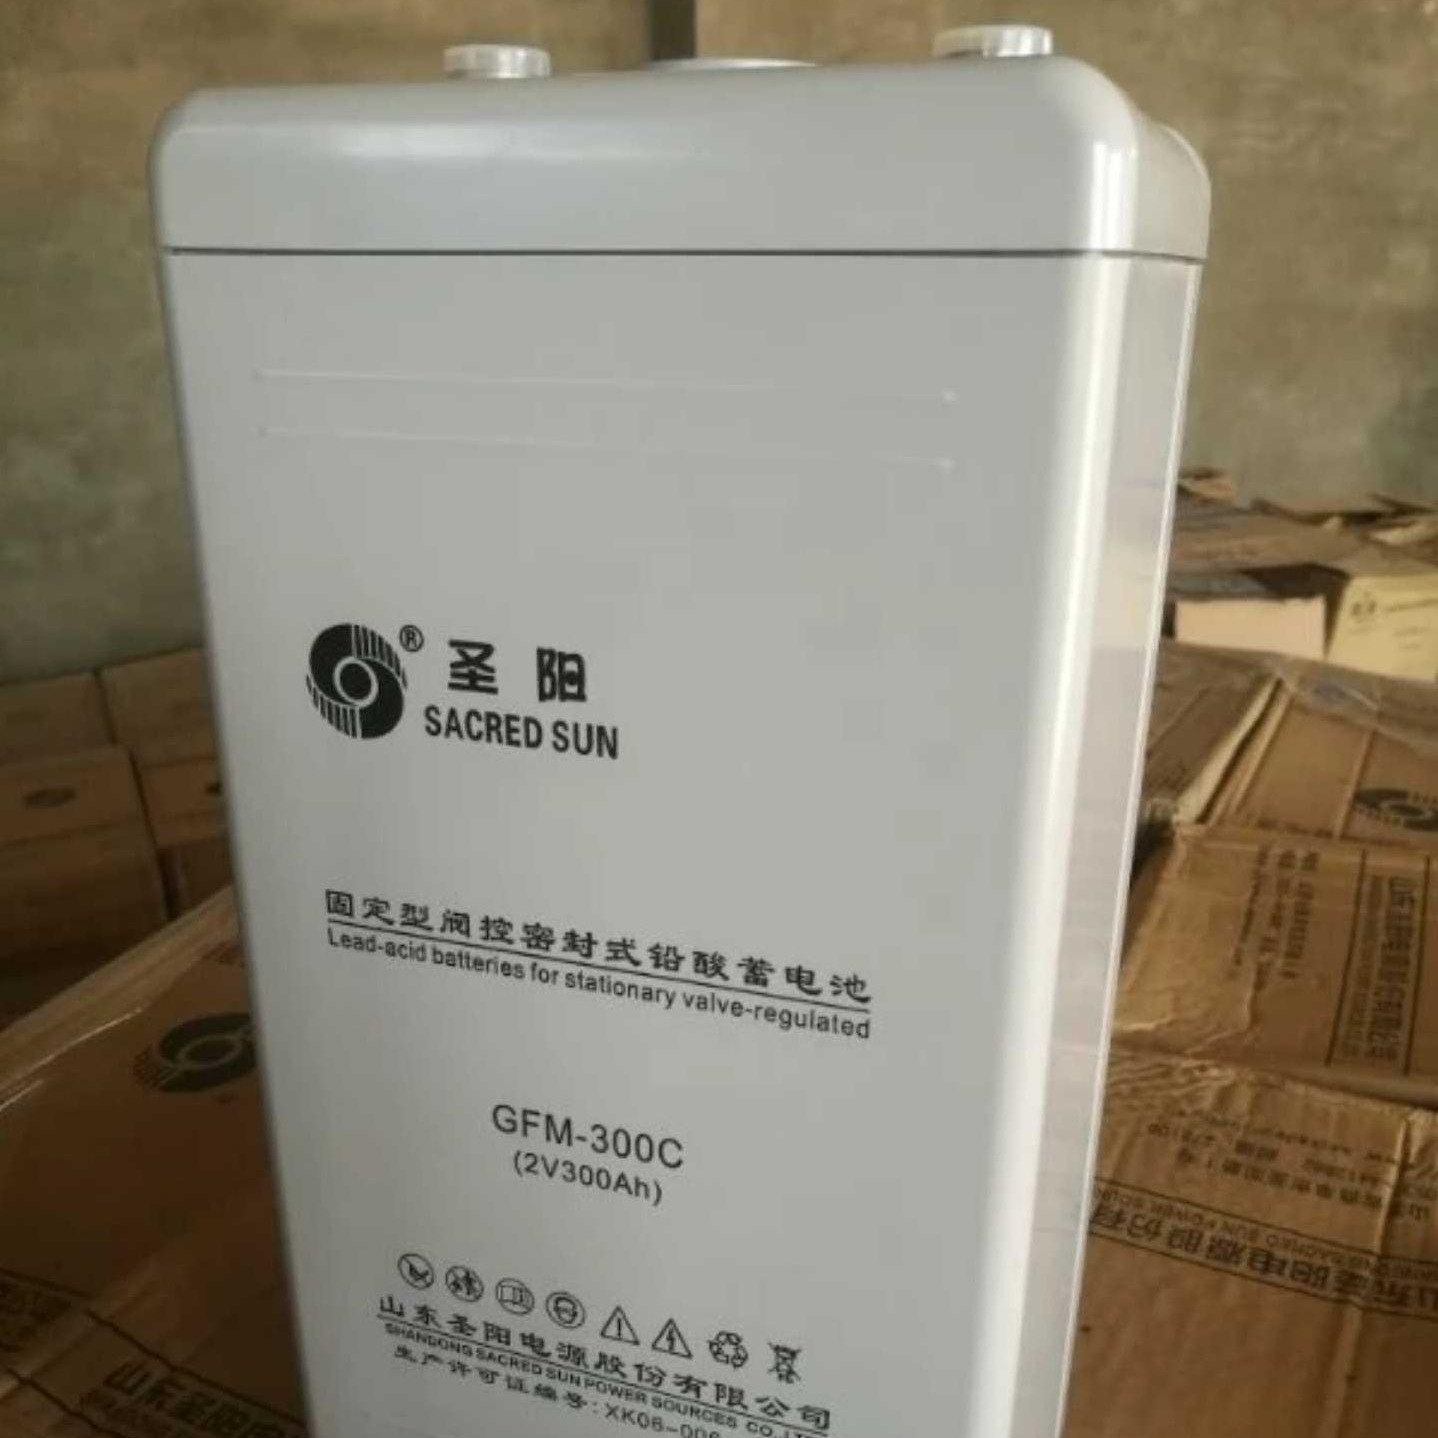 批发供应 2V300AH 圣阳蓄电池GFMD-300C 电力工程直流系统铅酸电池